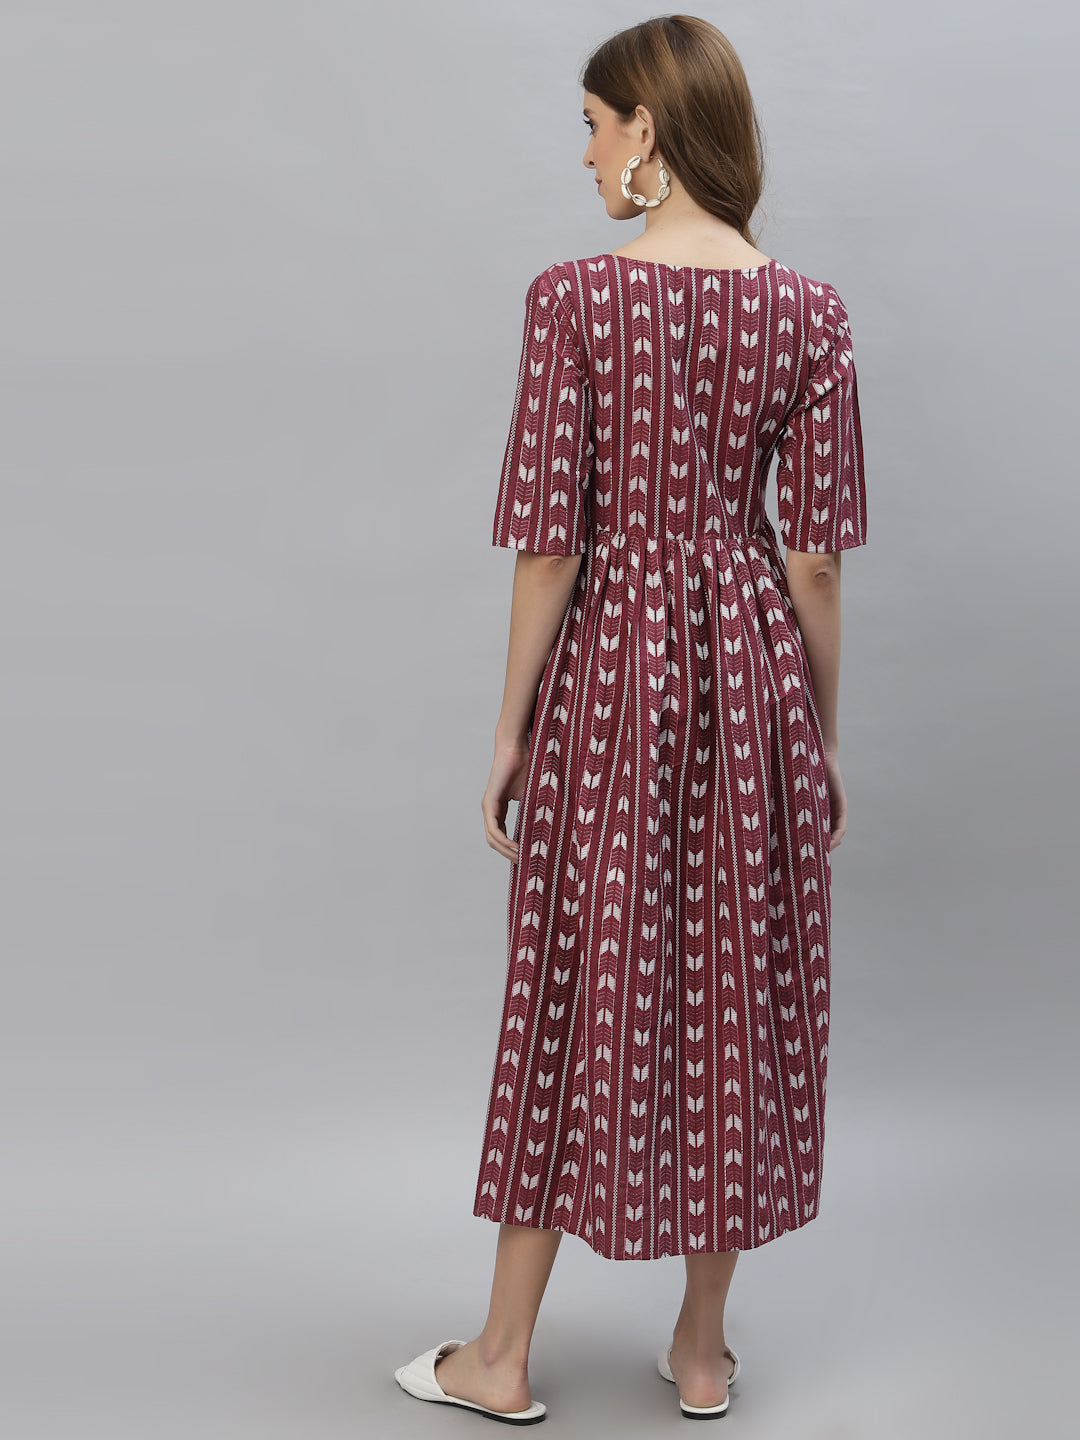 Self Design Cotton Blend Maxi Dress